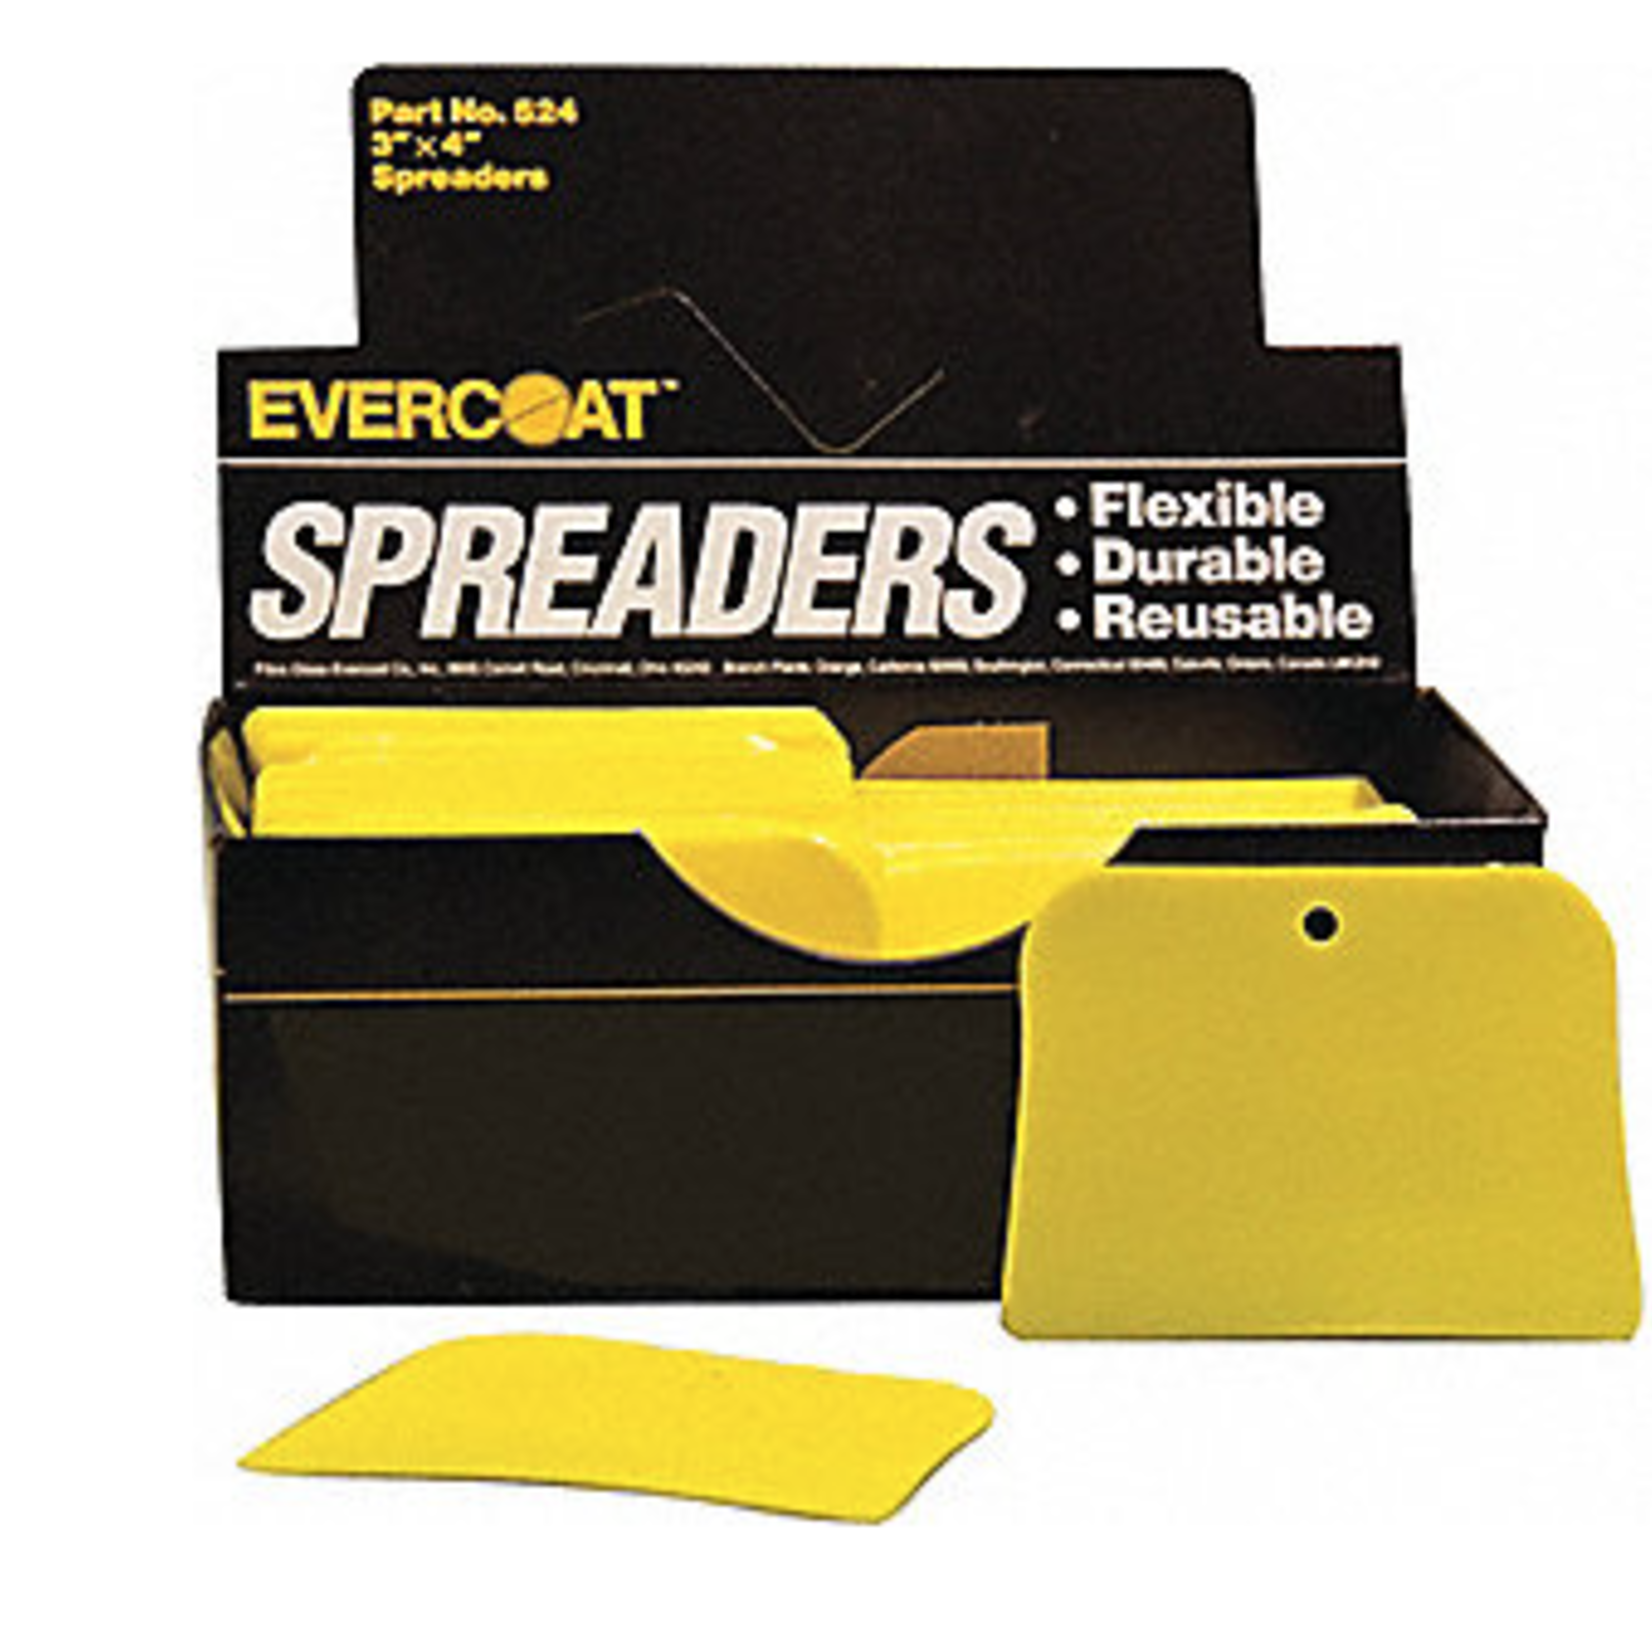 EVERCOAT Evercoat Plastic Spreaders 3x4